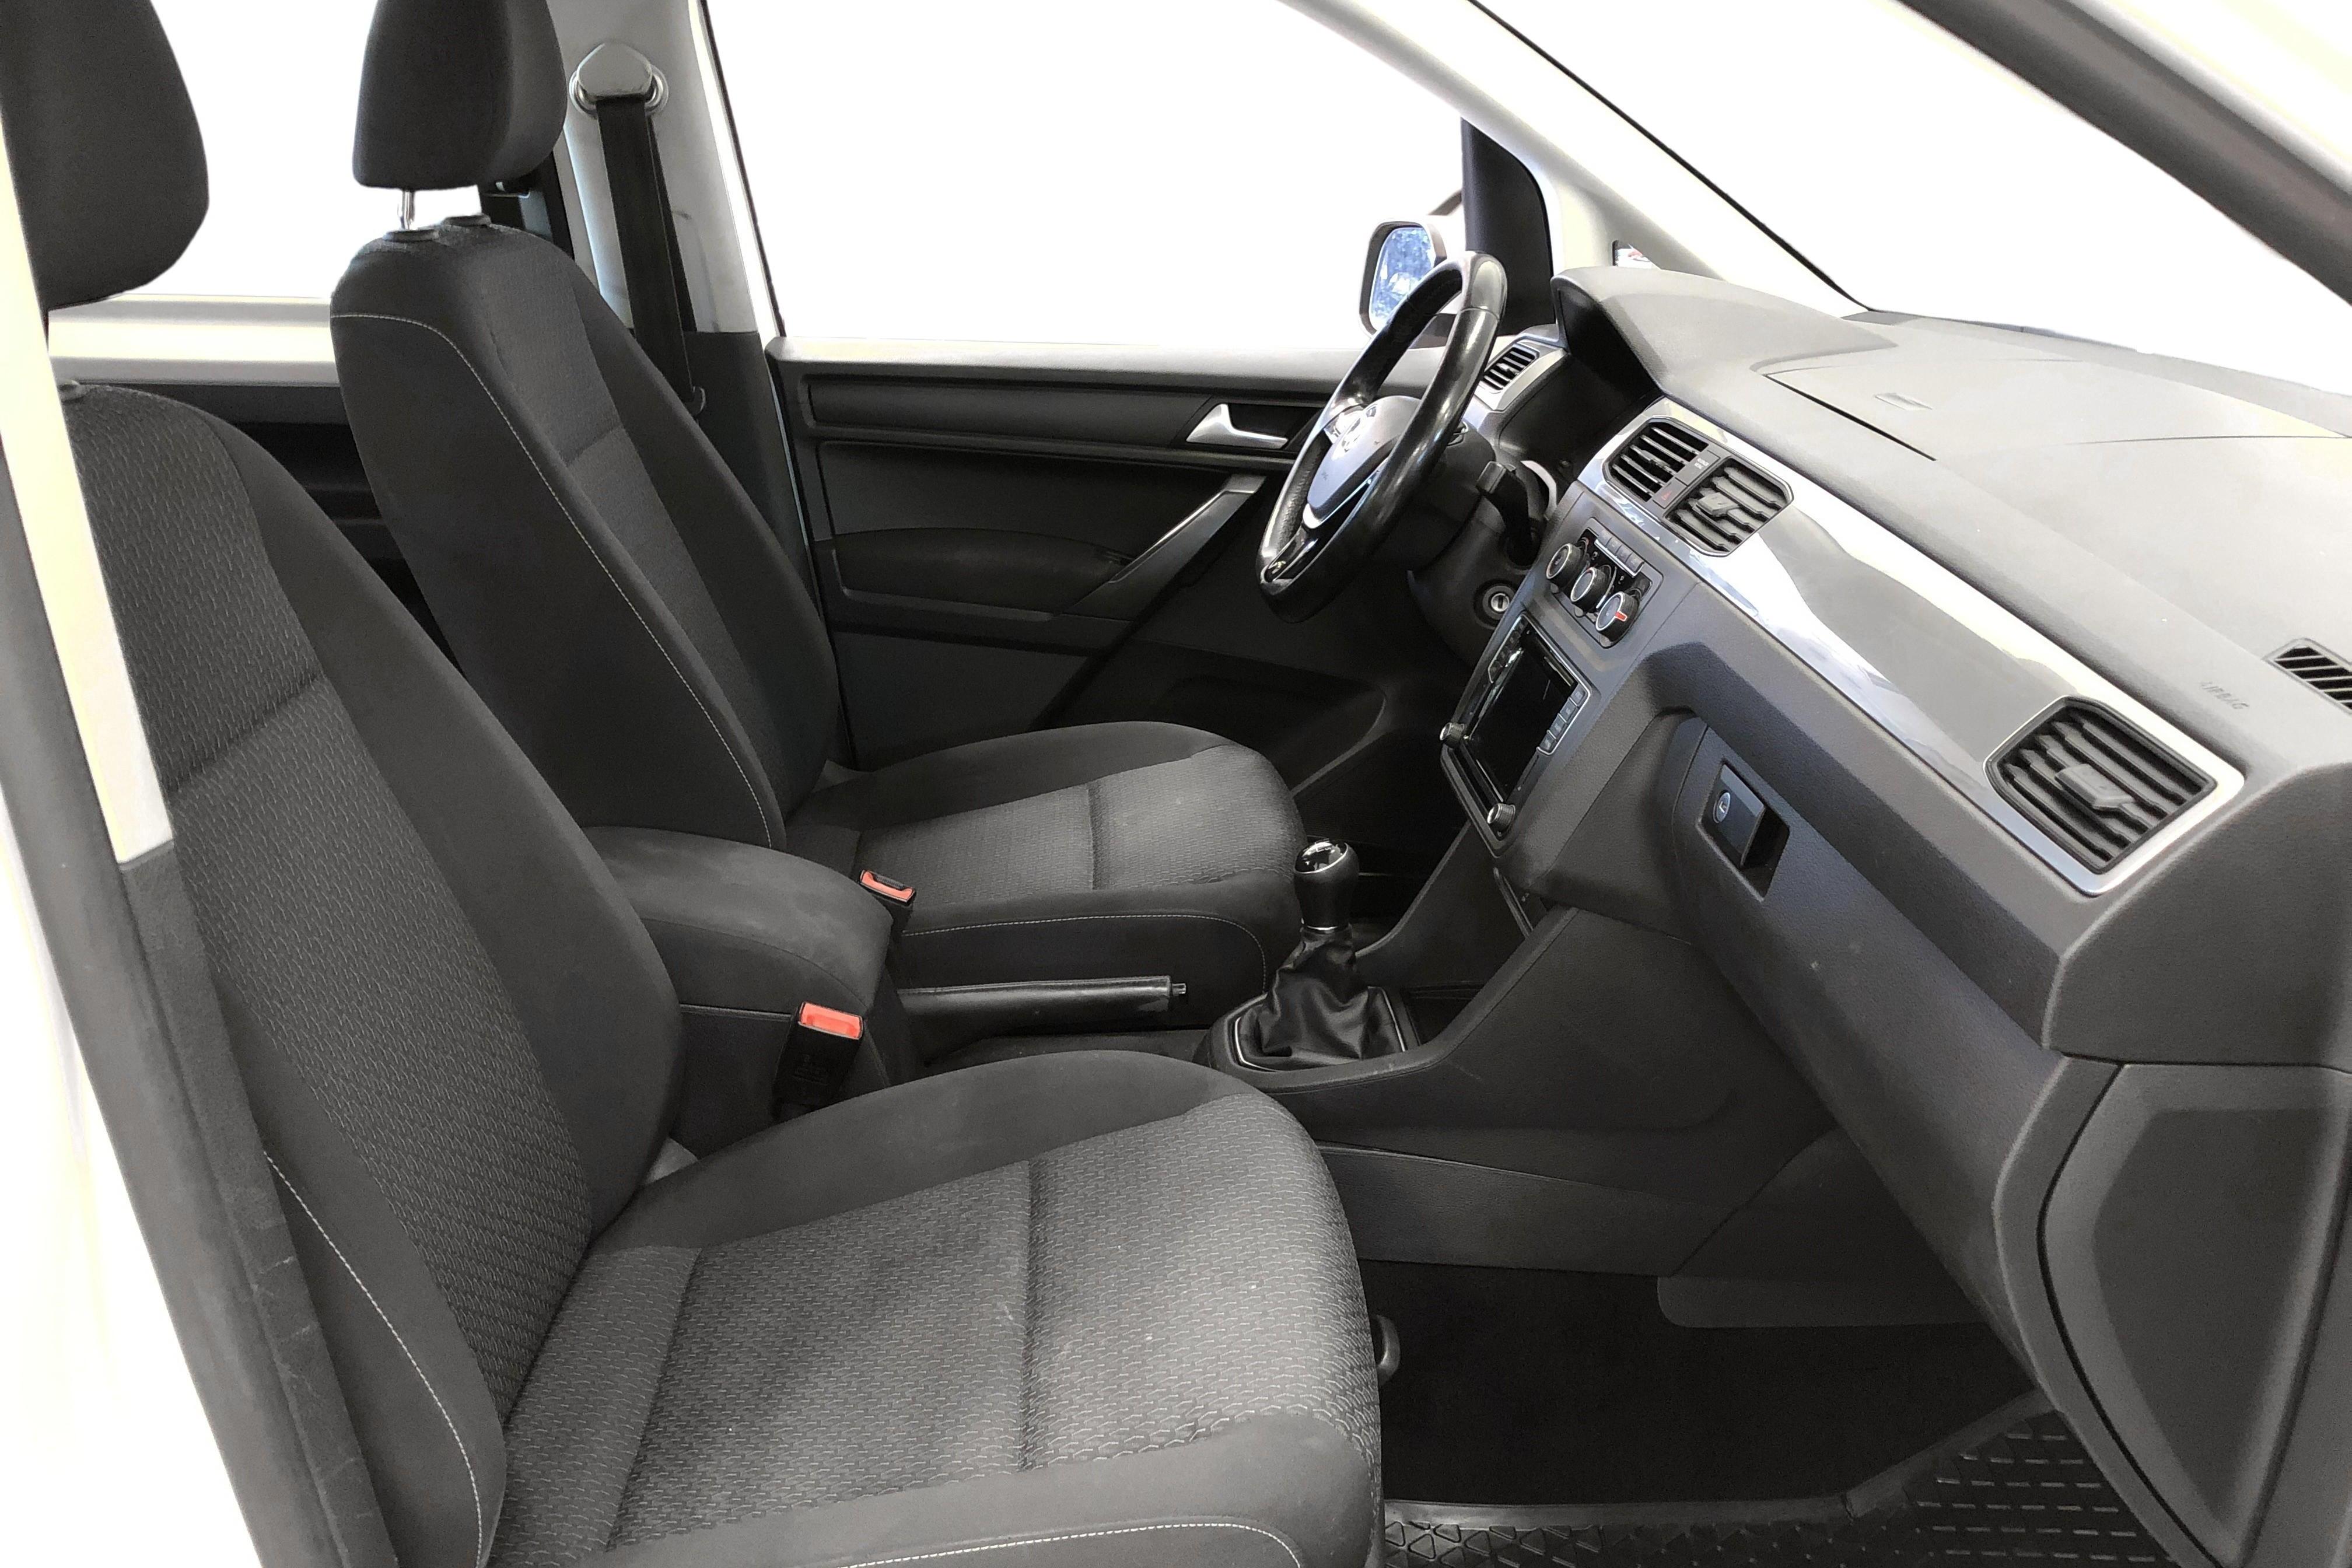 VW Caddy MPV 2.0 TDI (102hk) - 226 160 km - Manual - white - 2016